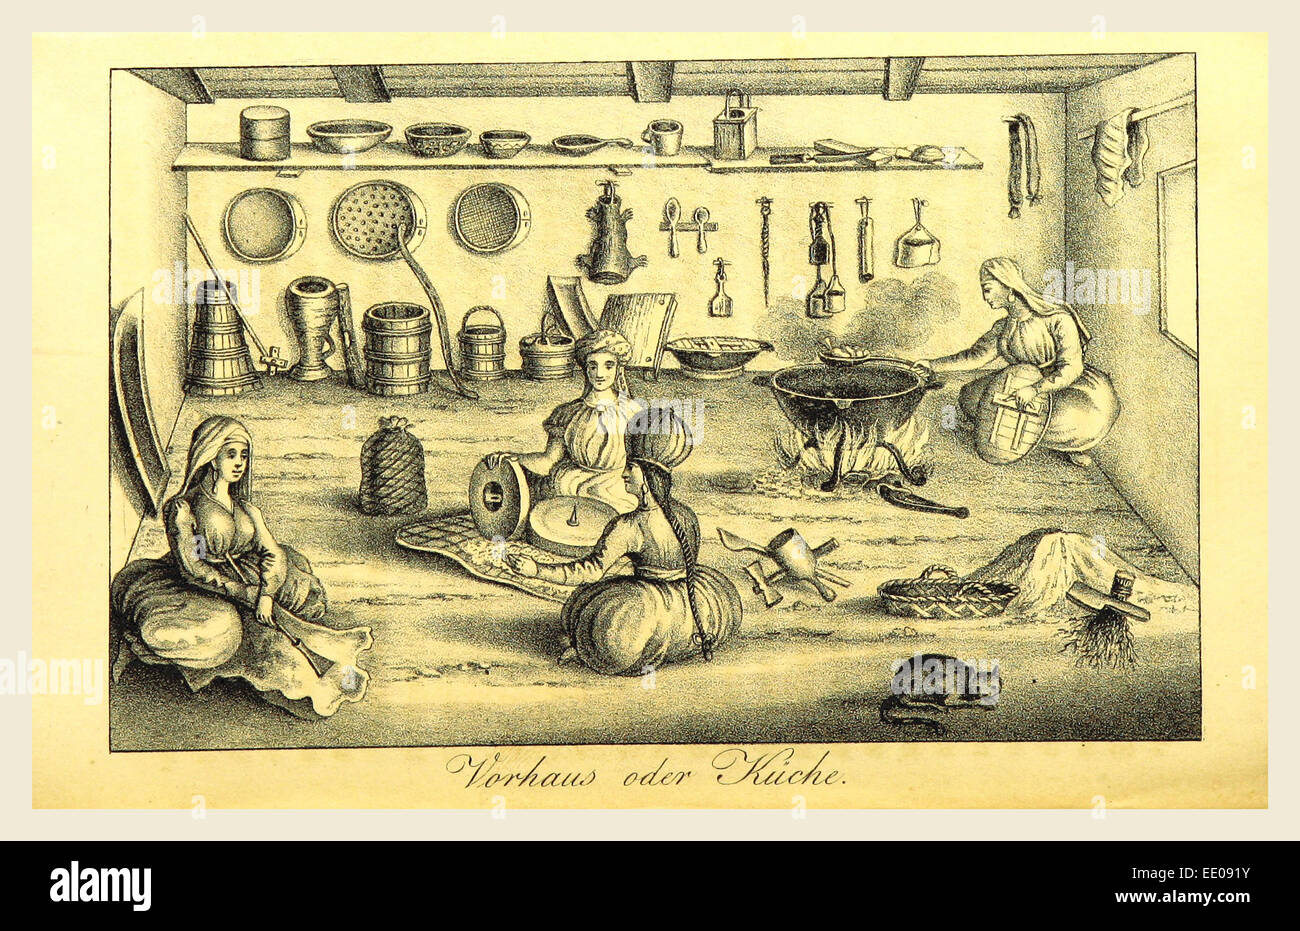 1822 bis 1828 Nogaijen-Tartaren, cuisine, gravure du xixe siècle Banque D'Images